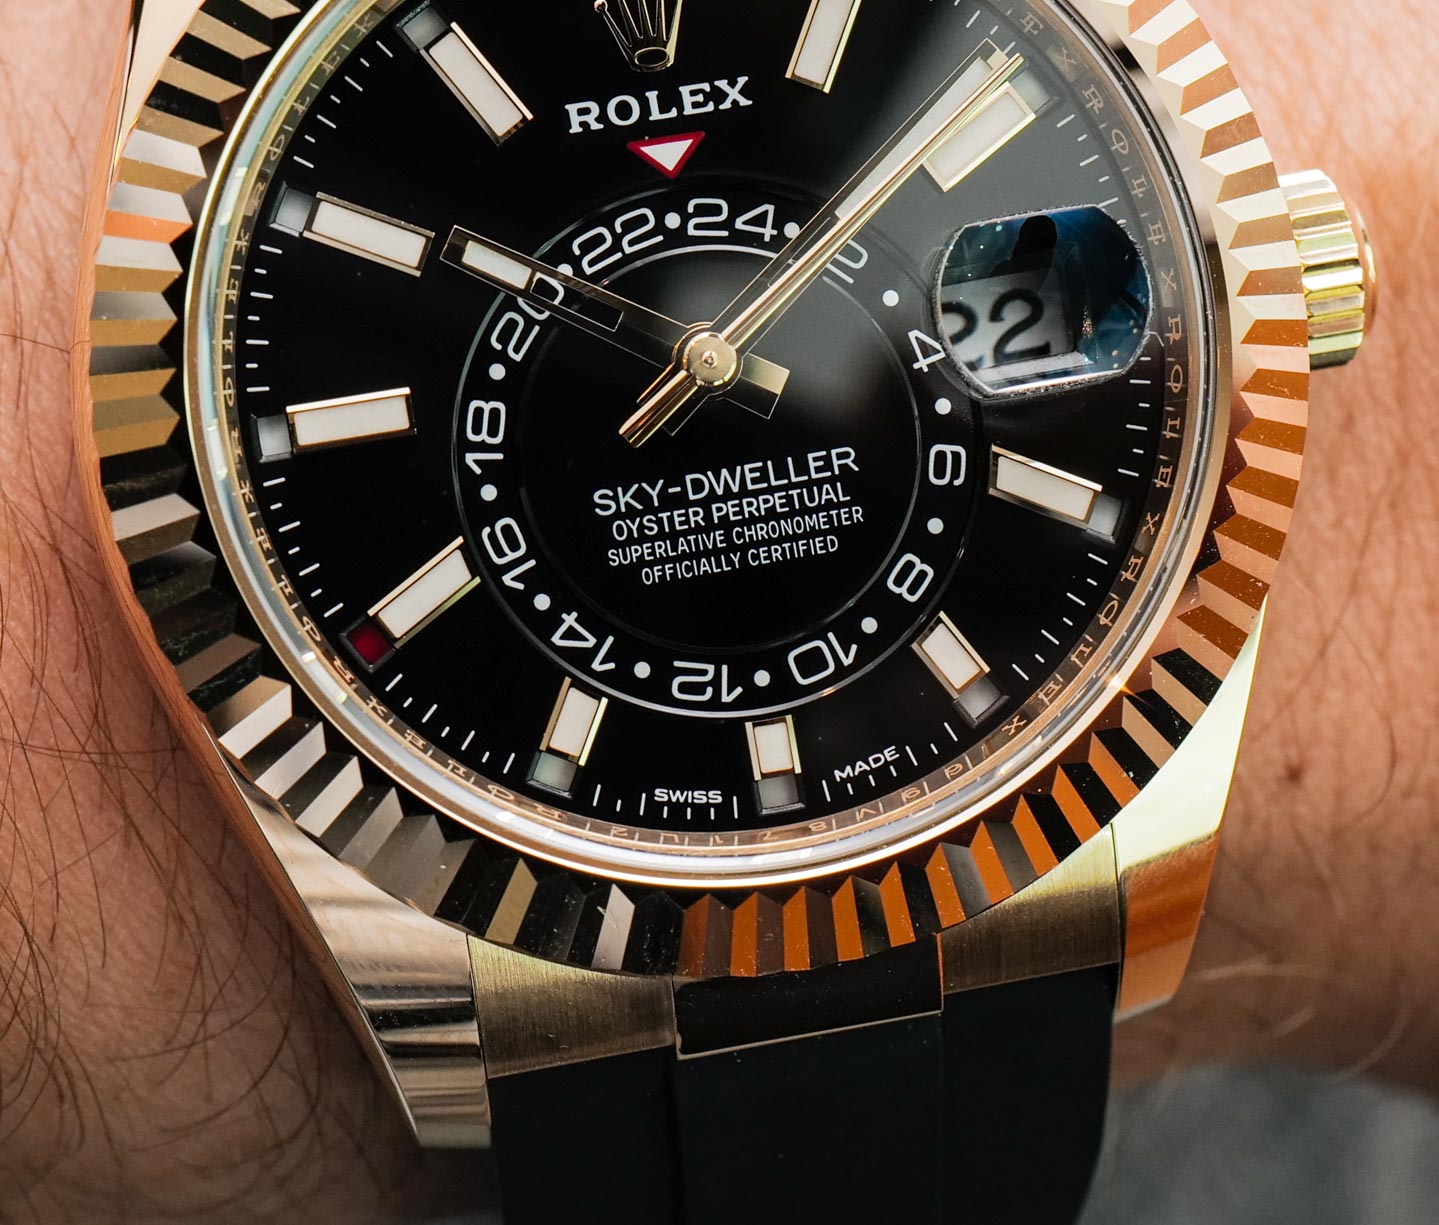 Hands-On: Rolex Sky-Dweller Watch On Oysterflex Bracelet Hands-On 